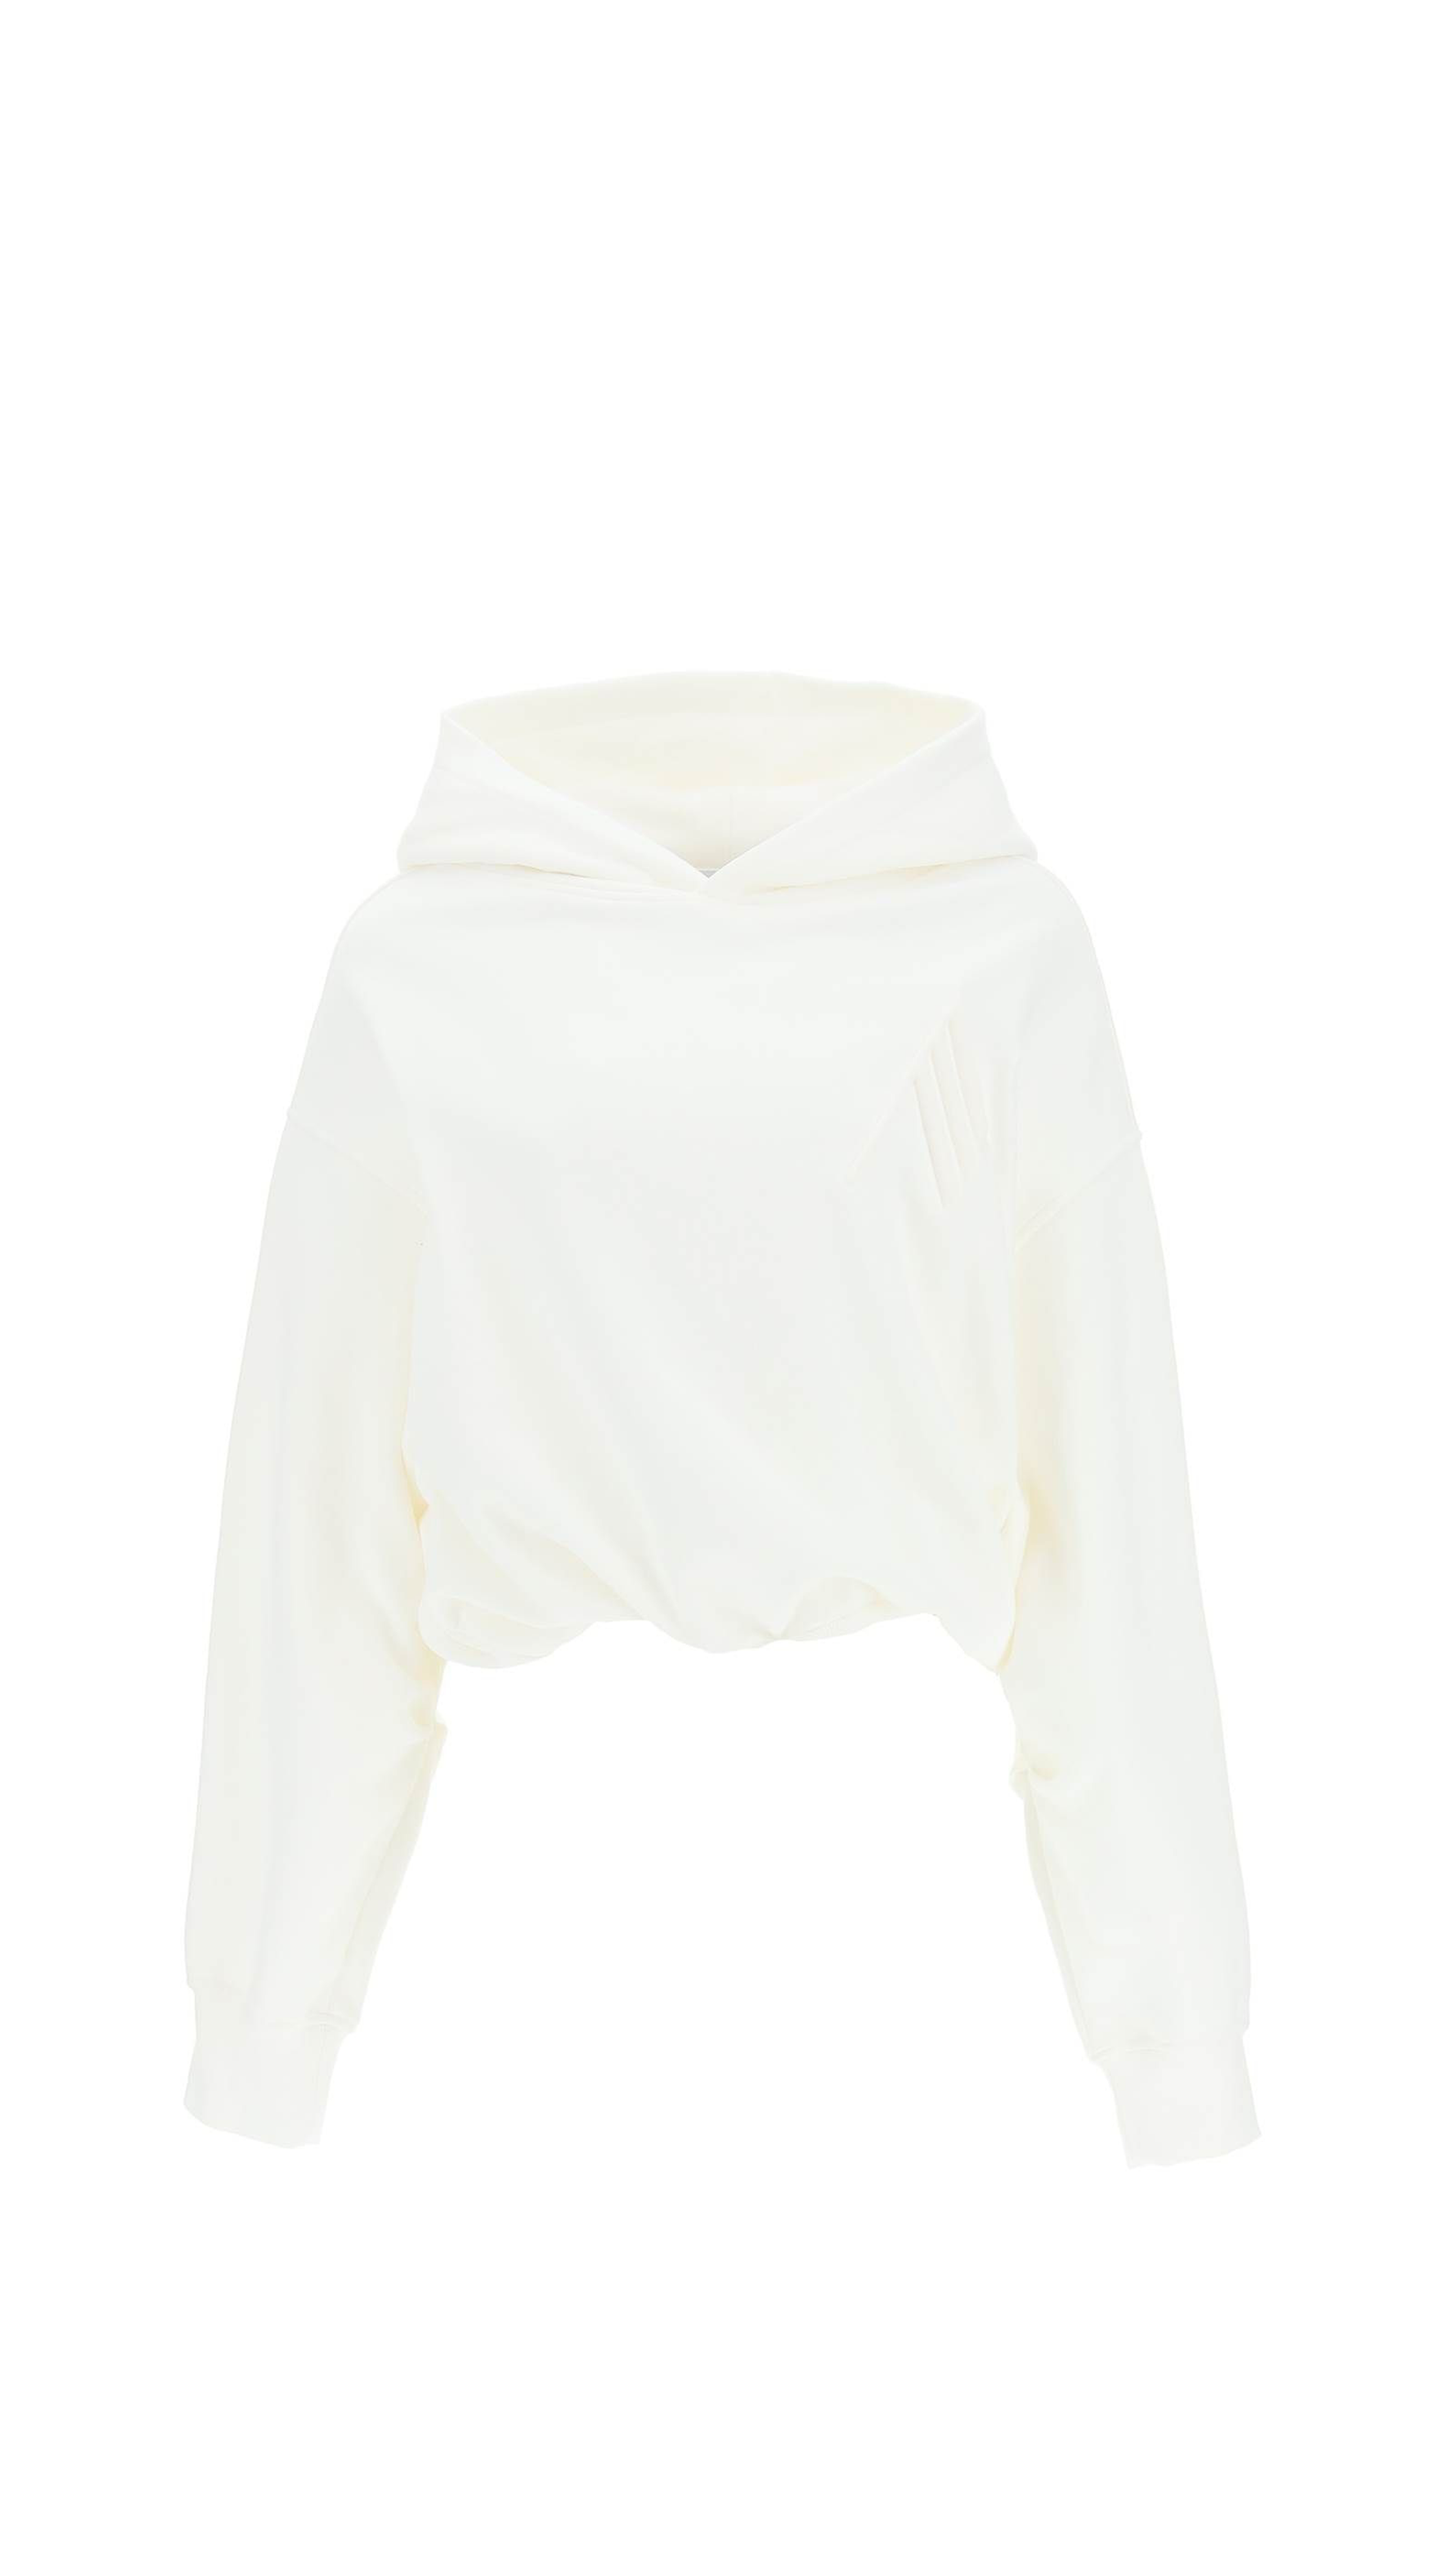 Maeve Sweatshirt - White